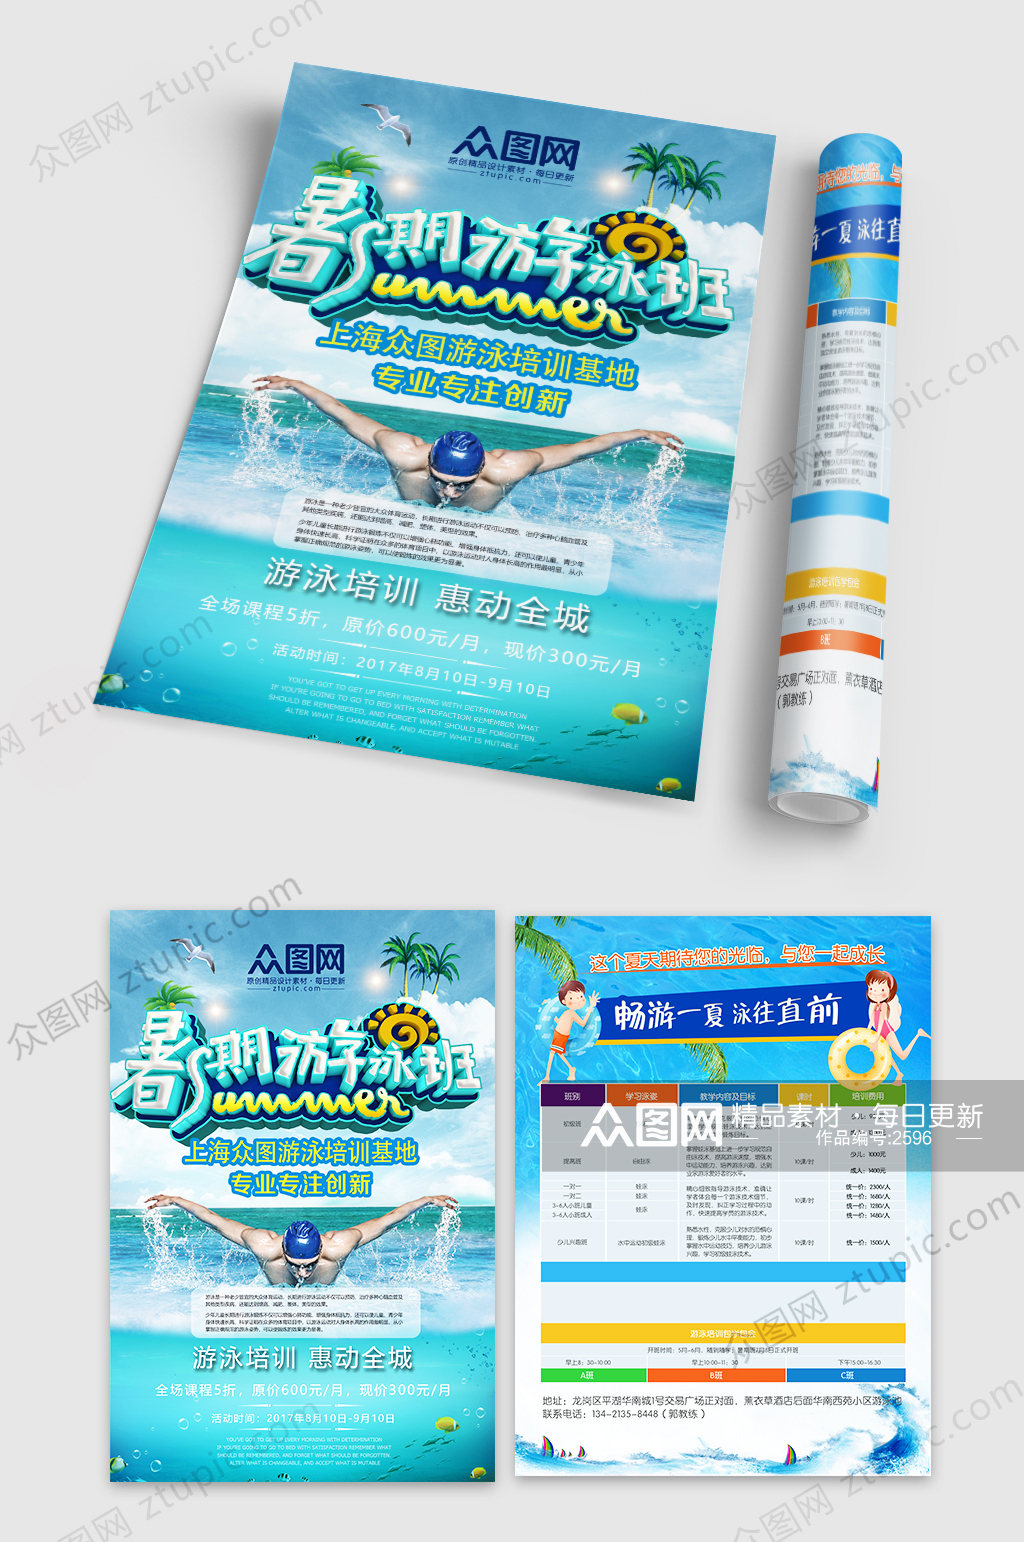 暑假游泳培训招生教育宣传单素材